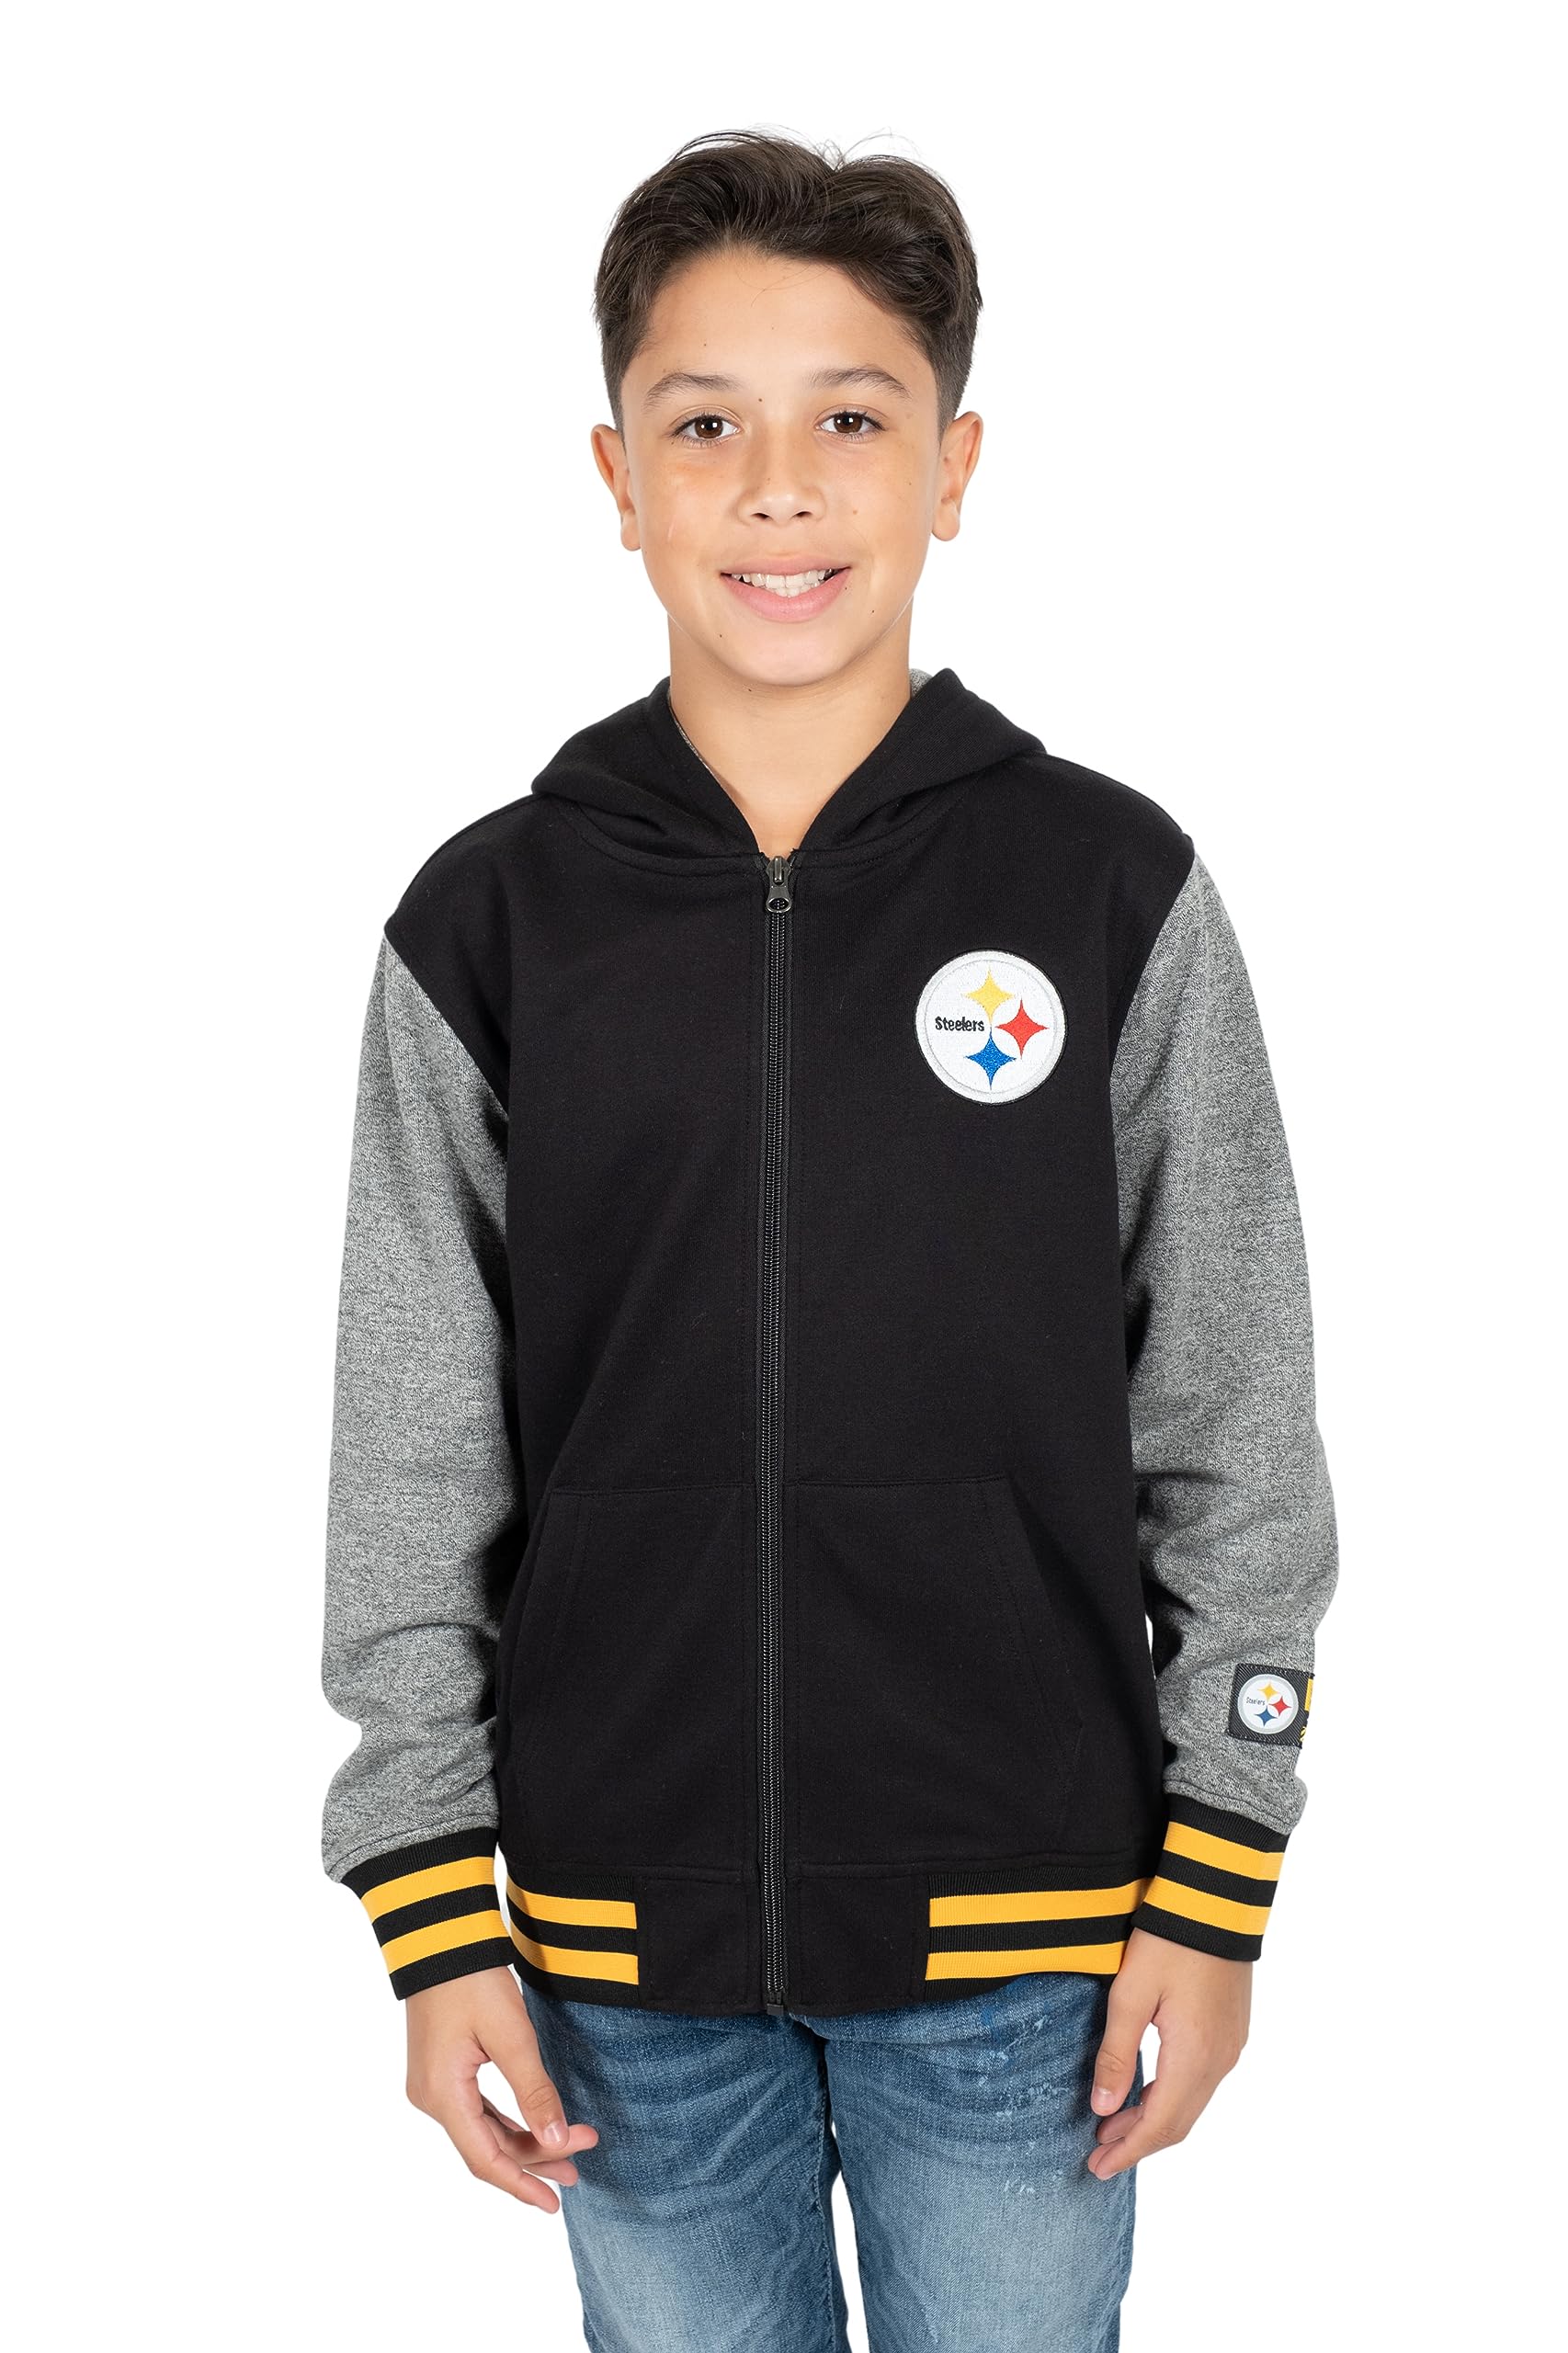 Ultra Game NFL Pittsburgh Steelers Youth Super Soft Fleece Full Zip Varisty Hoodie Sweatshirt|Pittsburgh Steelers